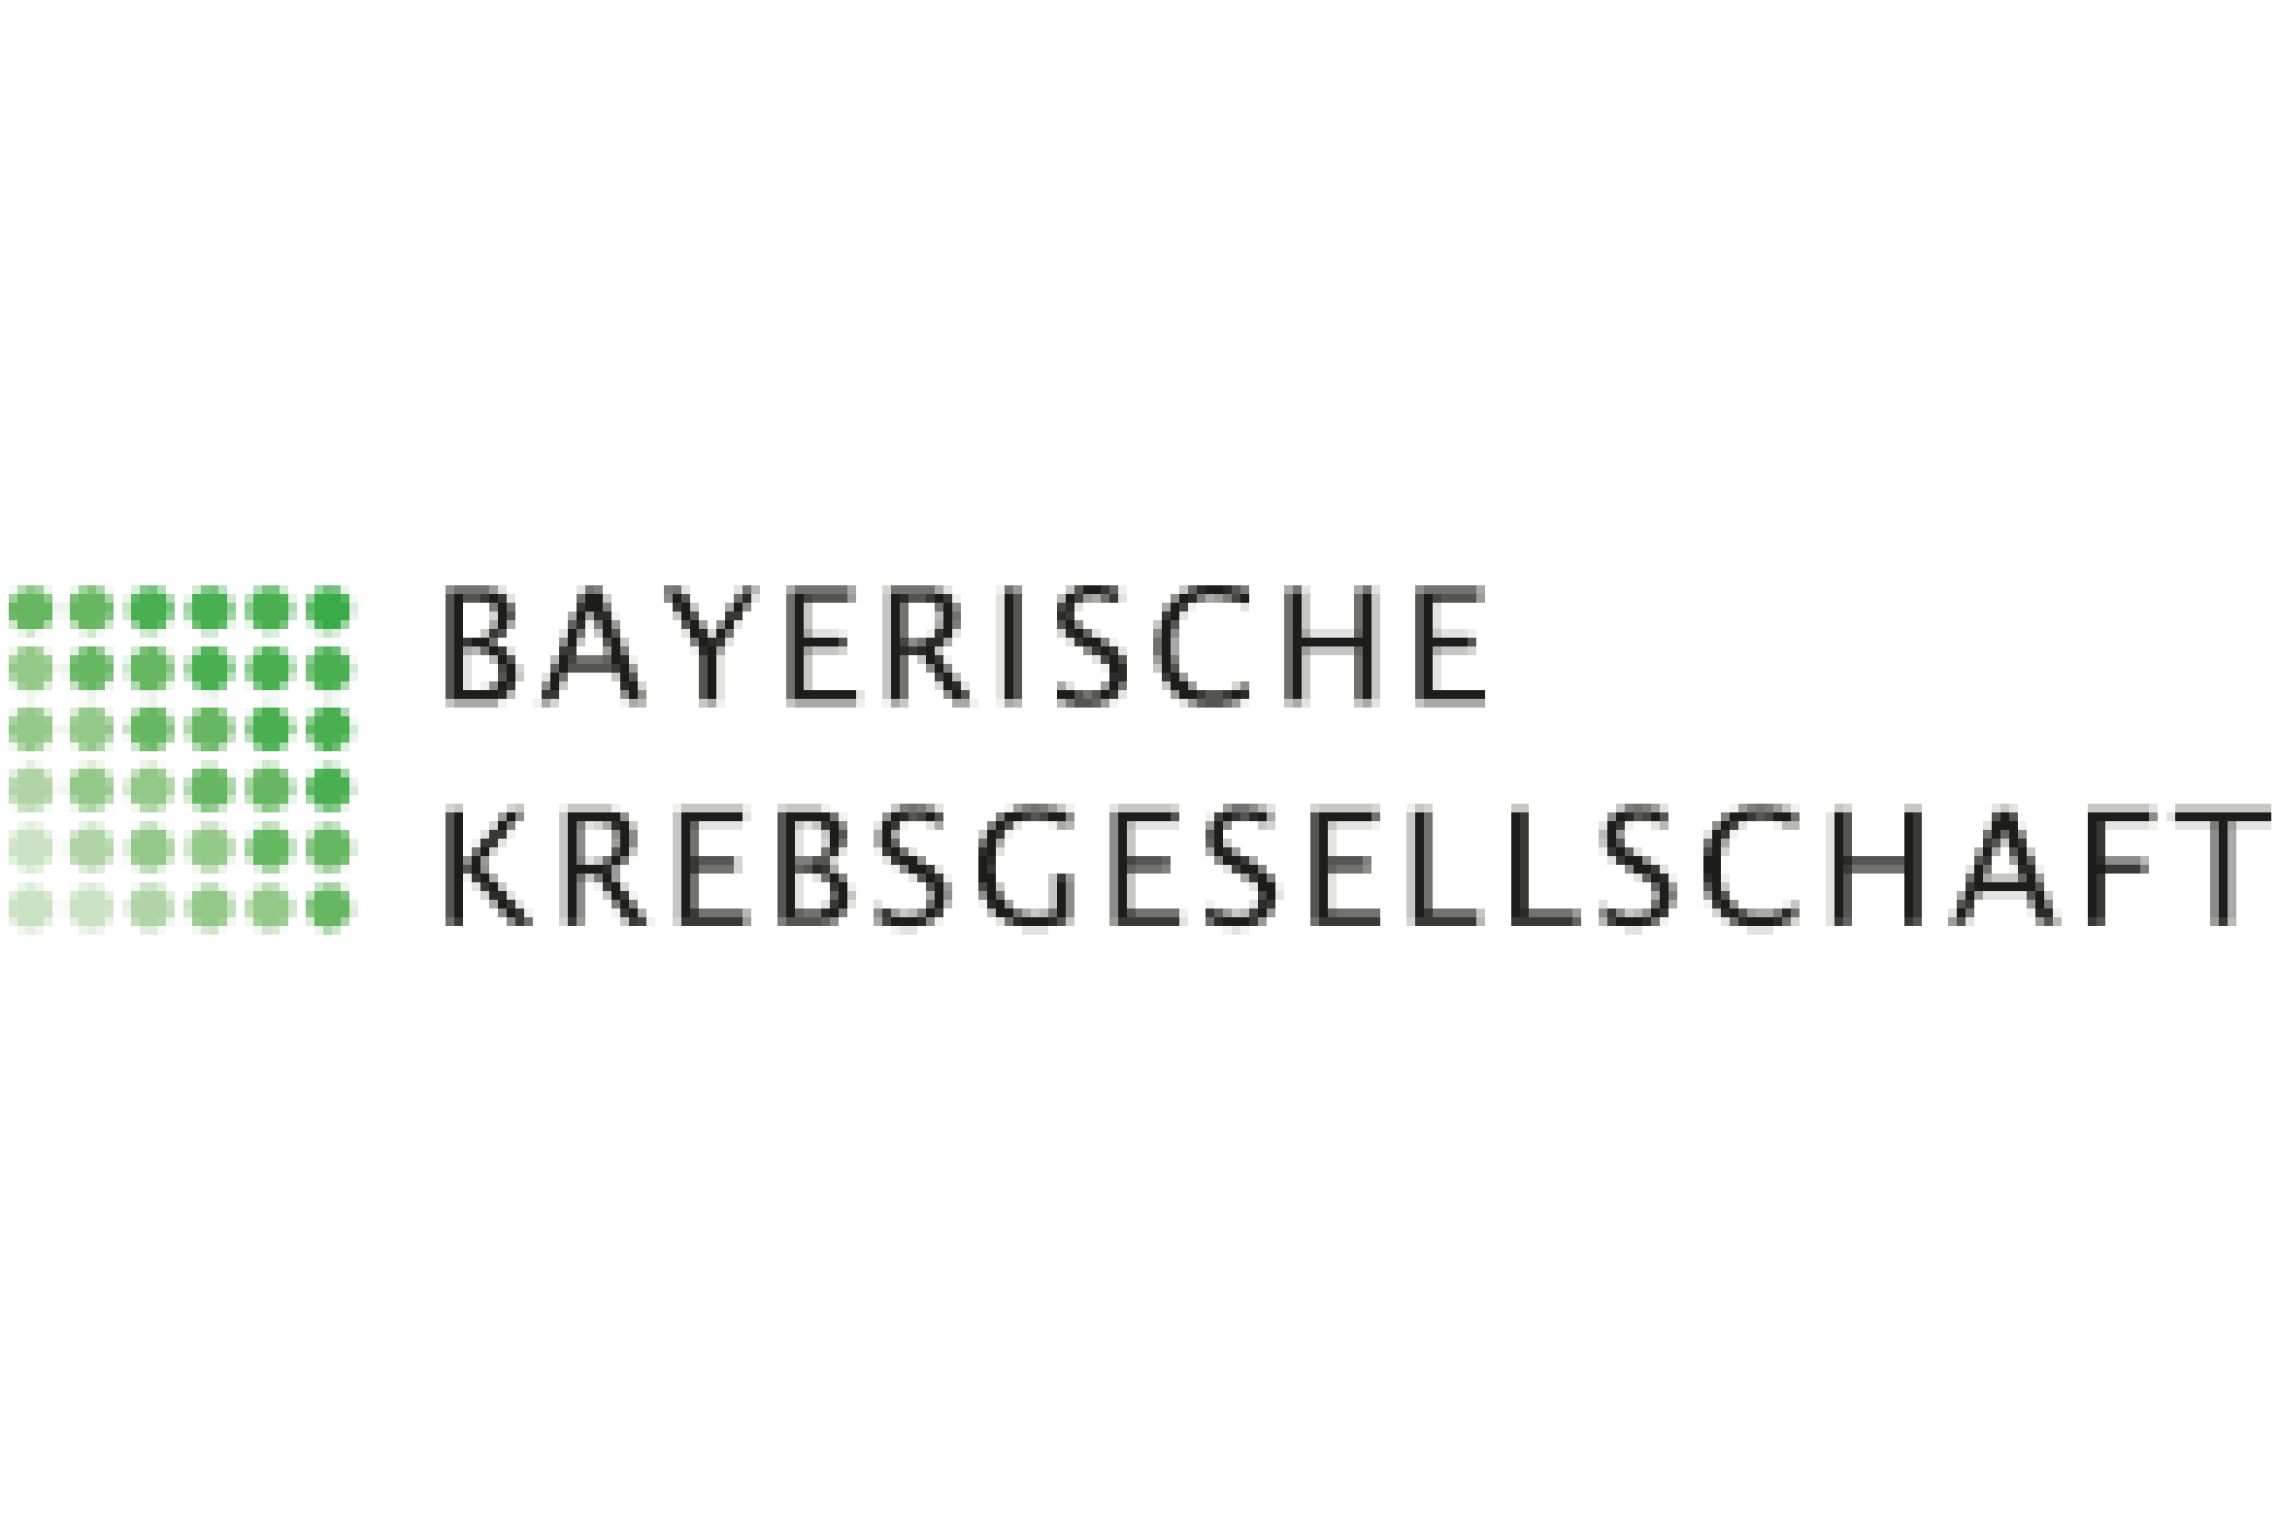 Logo Bayerische Krebsgesellschaft